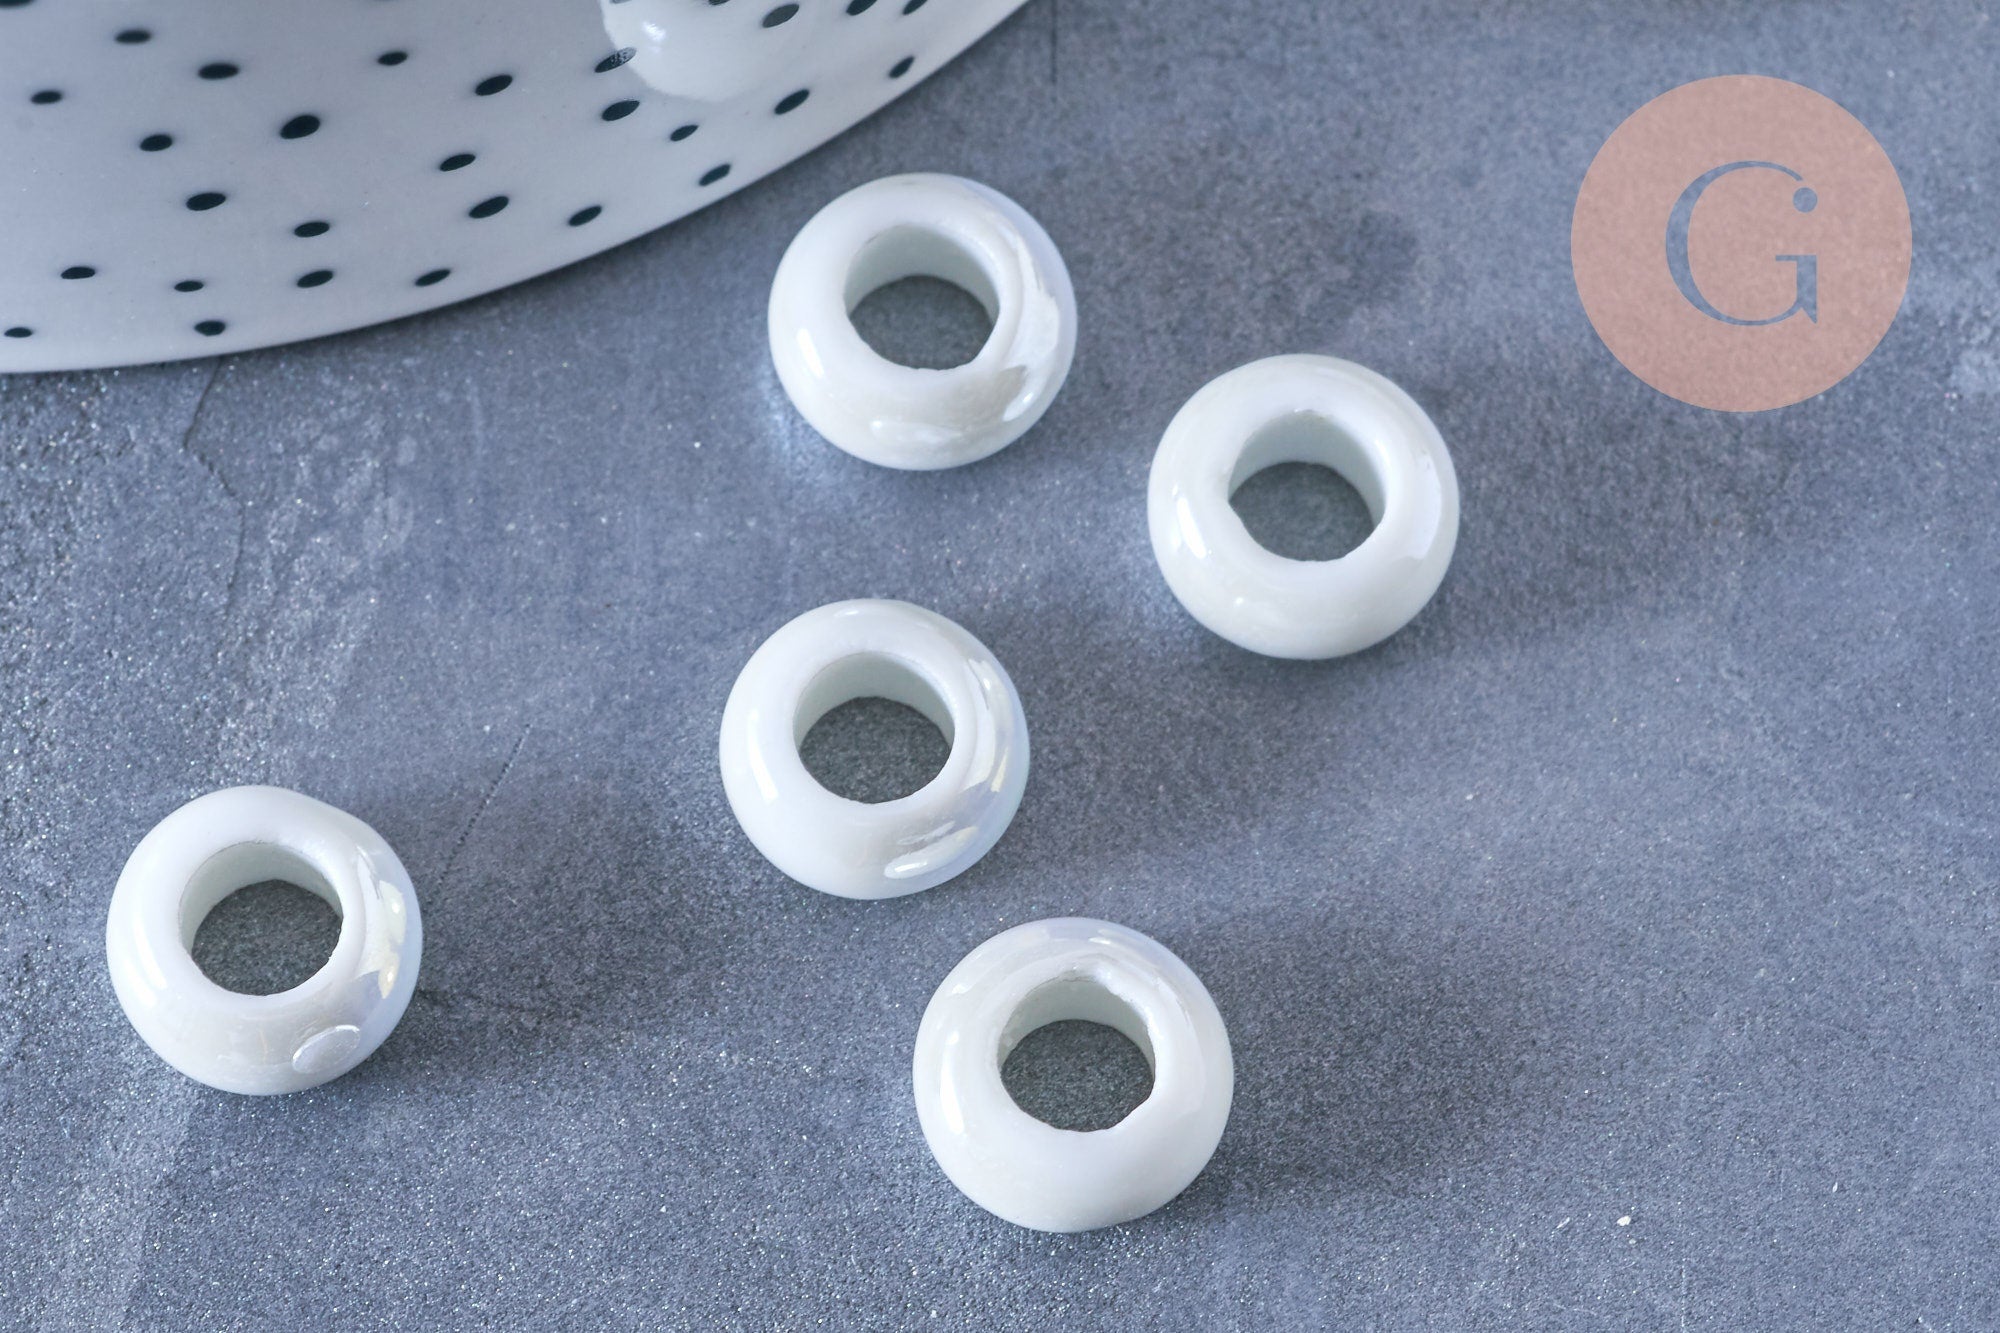 Perle porcelaine blanche irisé donut, perle céramique, fabrication bijoux,  céramique blanche, lot de 10, 14-16mm,g3311 - Un grand marché